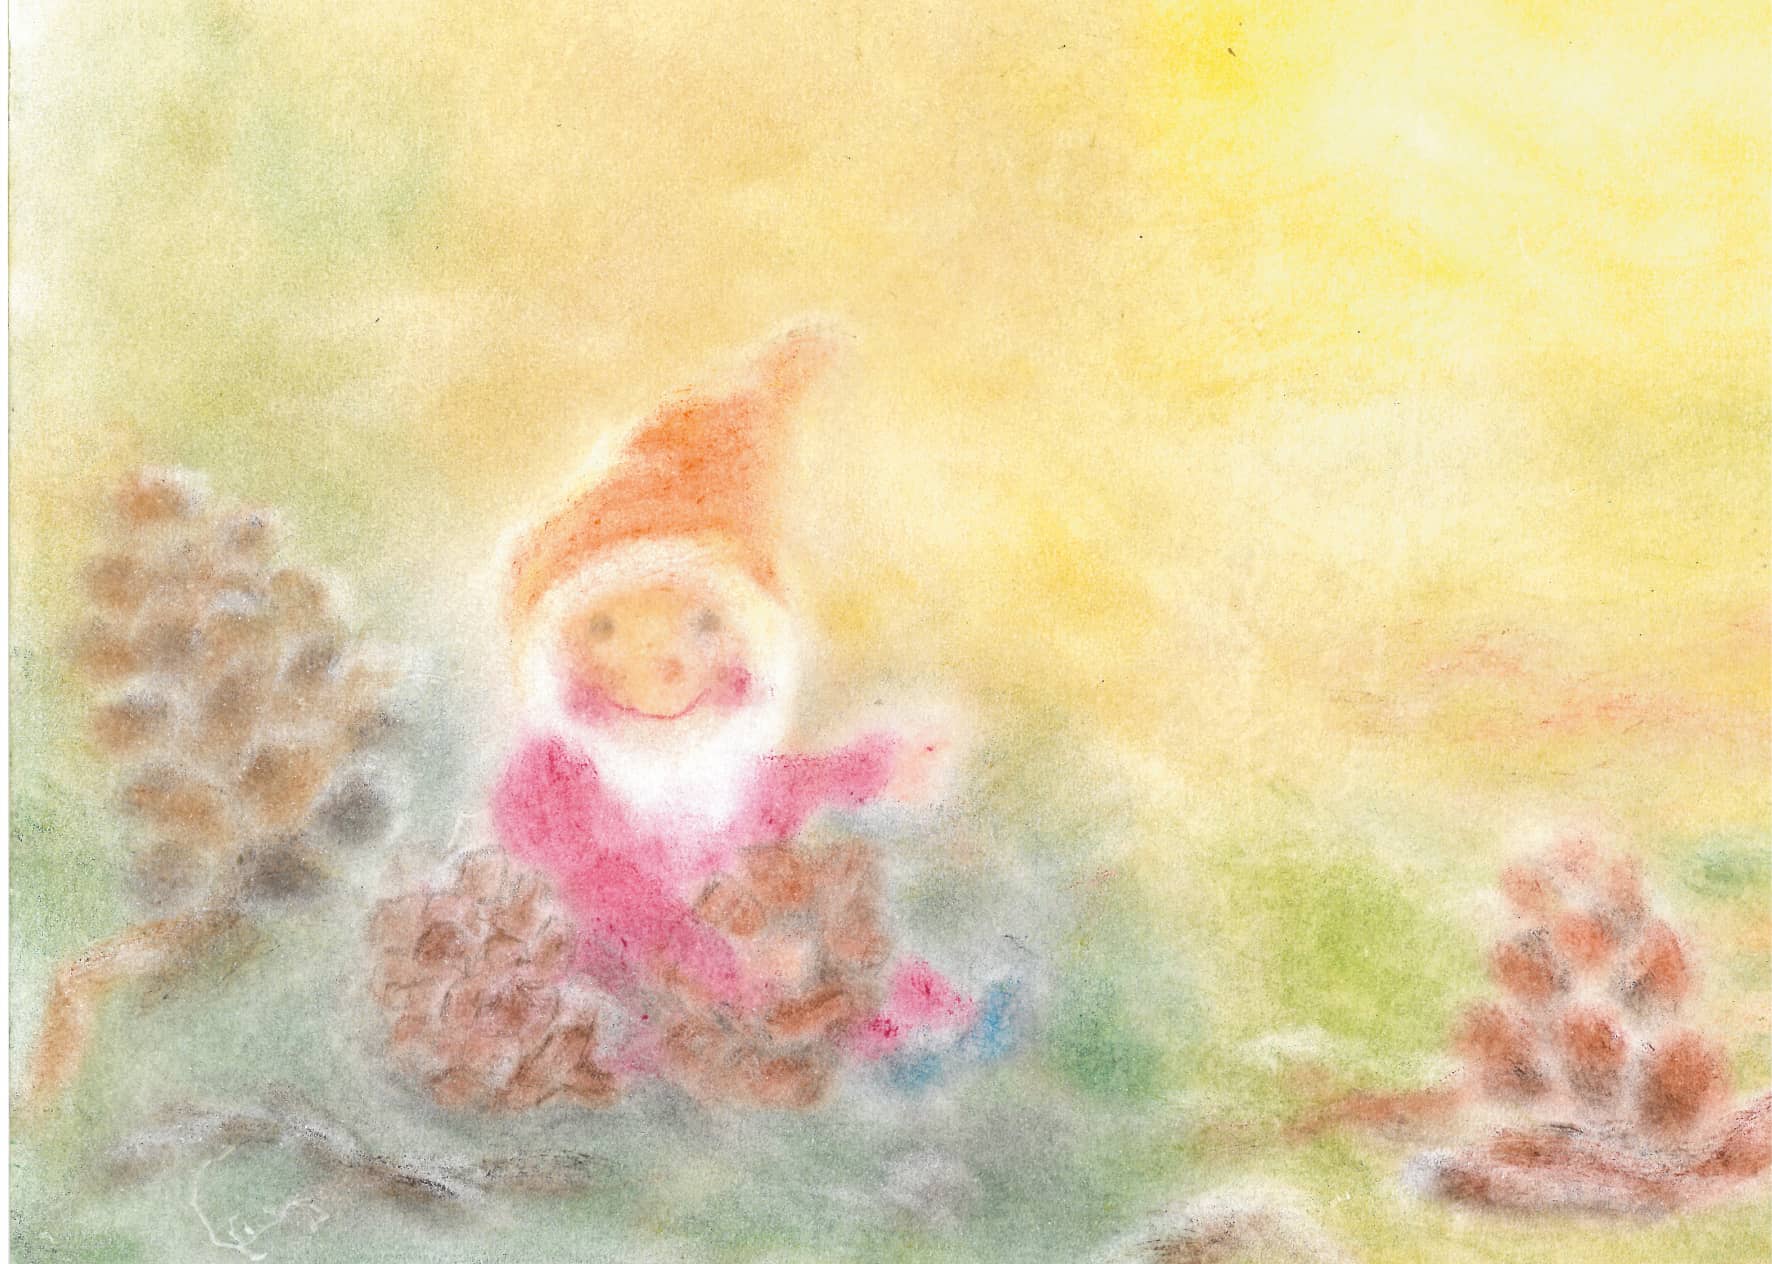 Seccorell Postkarte "Waldzwerg" zeigt eine gemütliche Szene mit einem Zwerg umgeben von Kiefernzapfen, illustriert in warmen Seccorell-Farbnuancen.